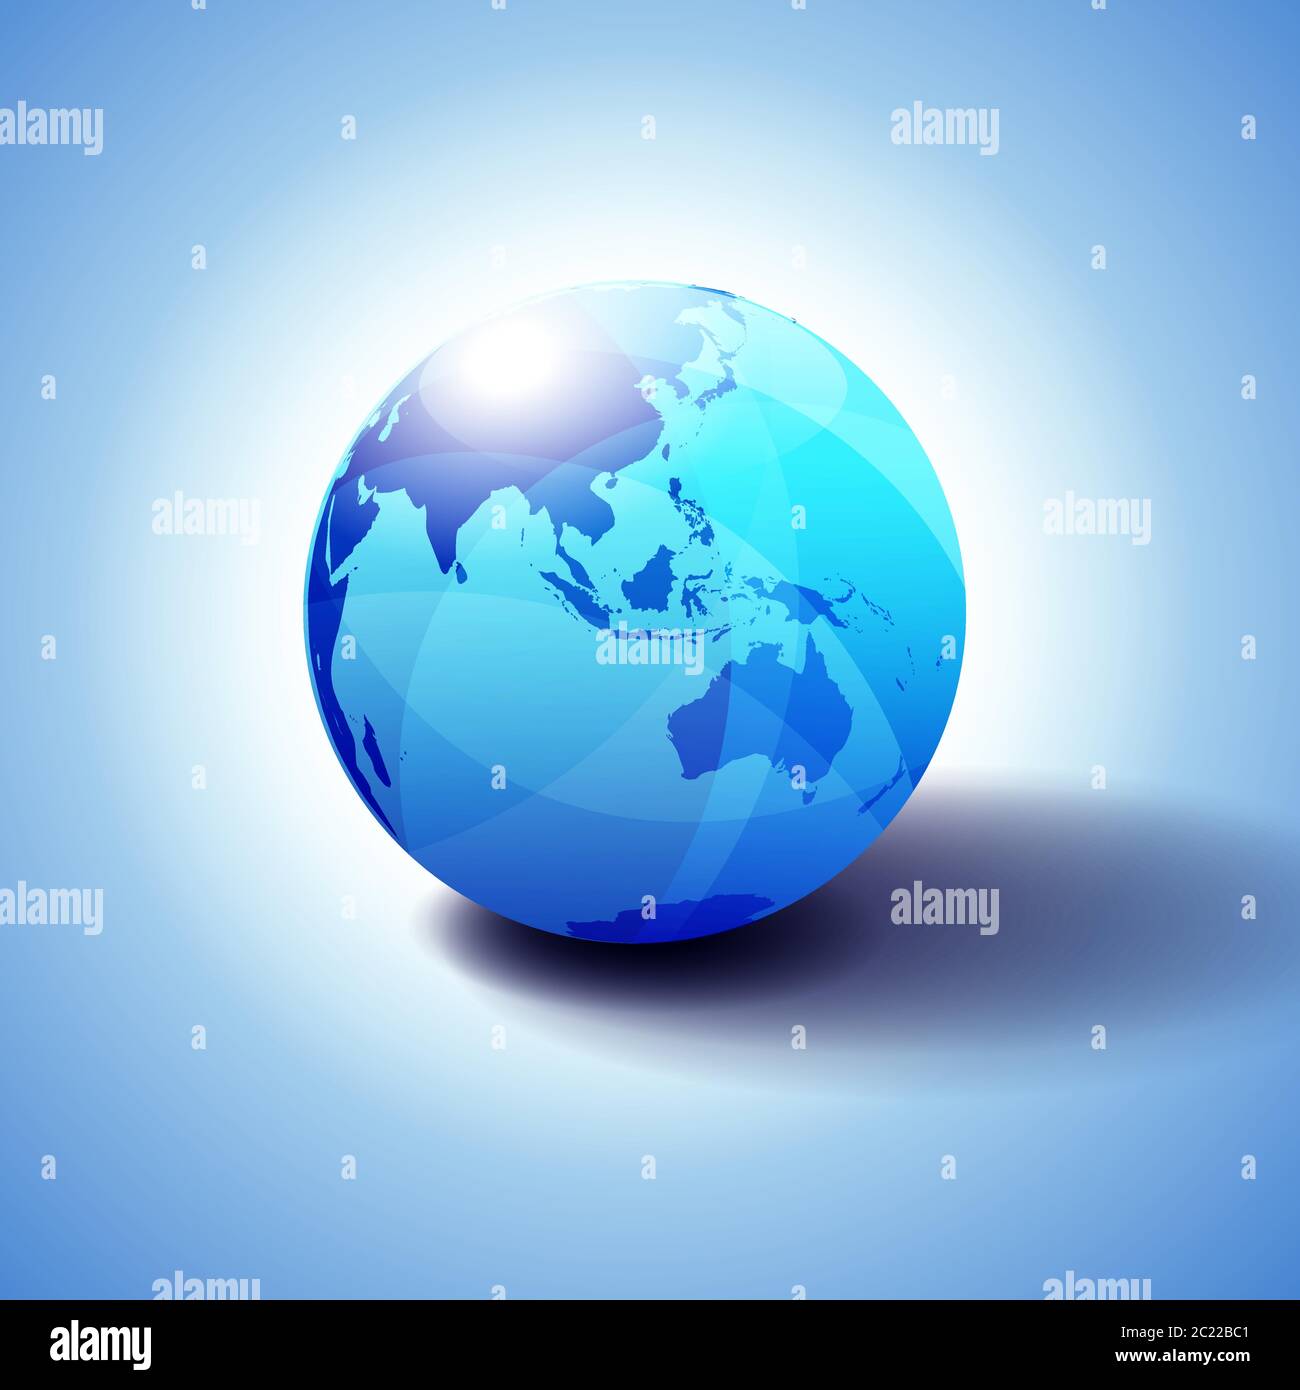 Asie et Australie, arrière-plan avec illustration 3D Globe Icon, sphère brillante et brillante avec carte globale en bleu subtil donnant une sensation de transparence. Illustration de Vecteur